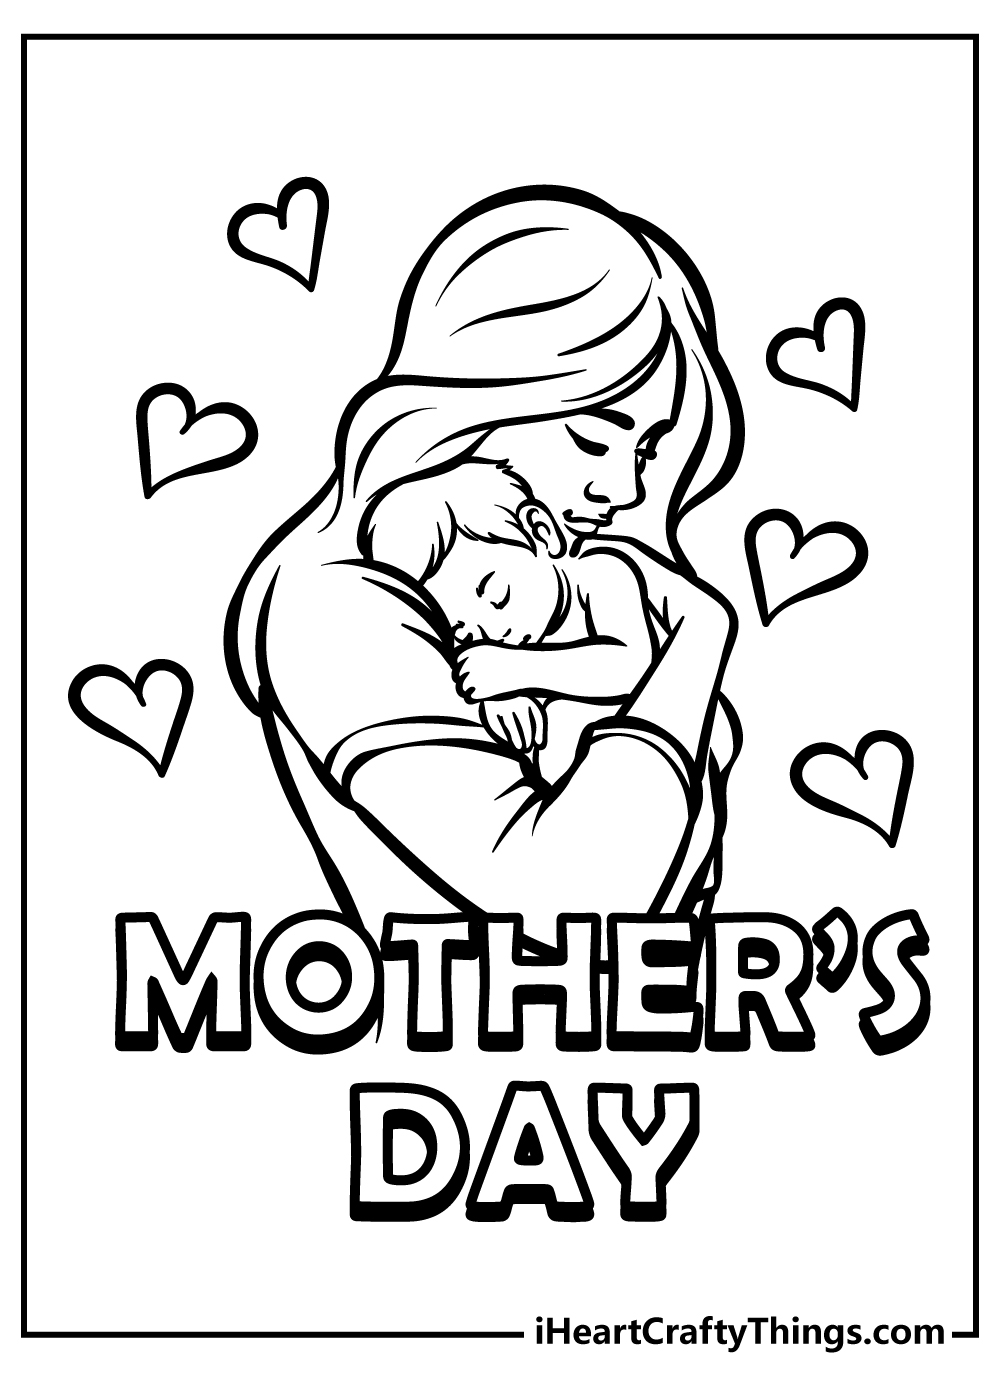 TEACHING TUESDAY: A Mother's Day Art Project - Kristen Hewitt